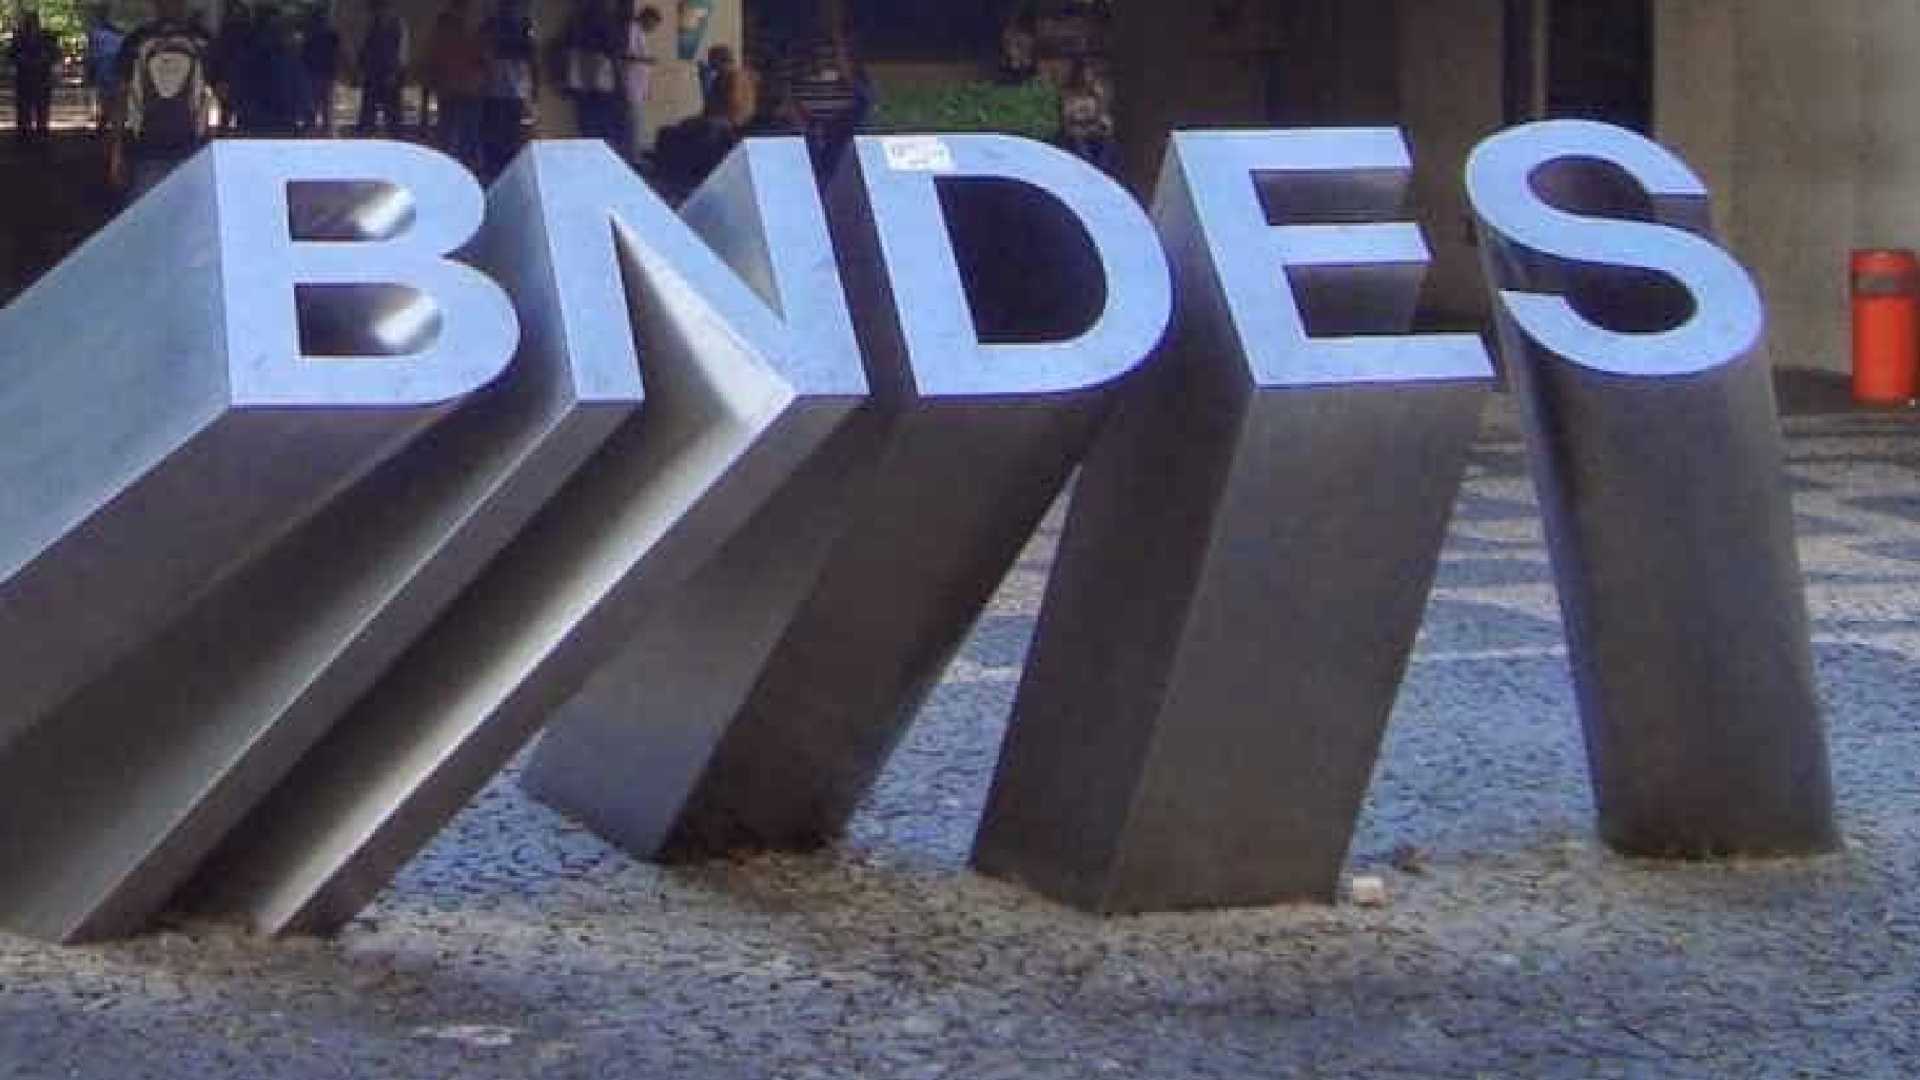 BNDES registra queda de 3% no lucro líquido em 2017